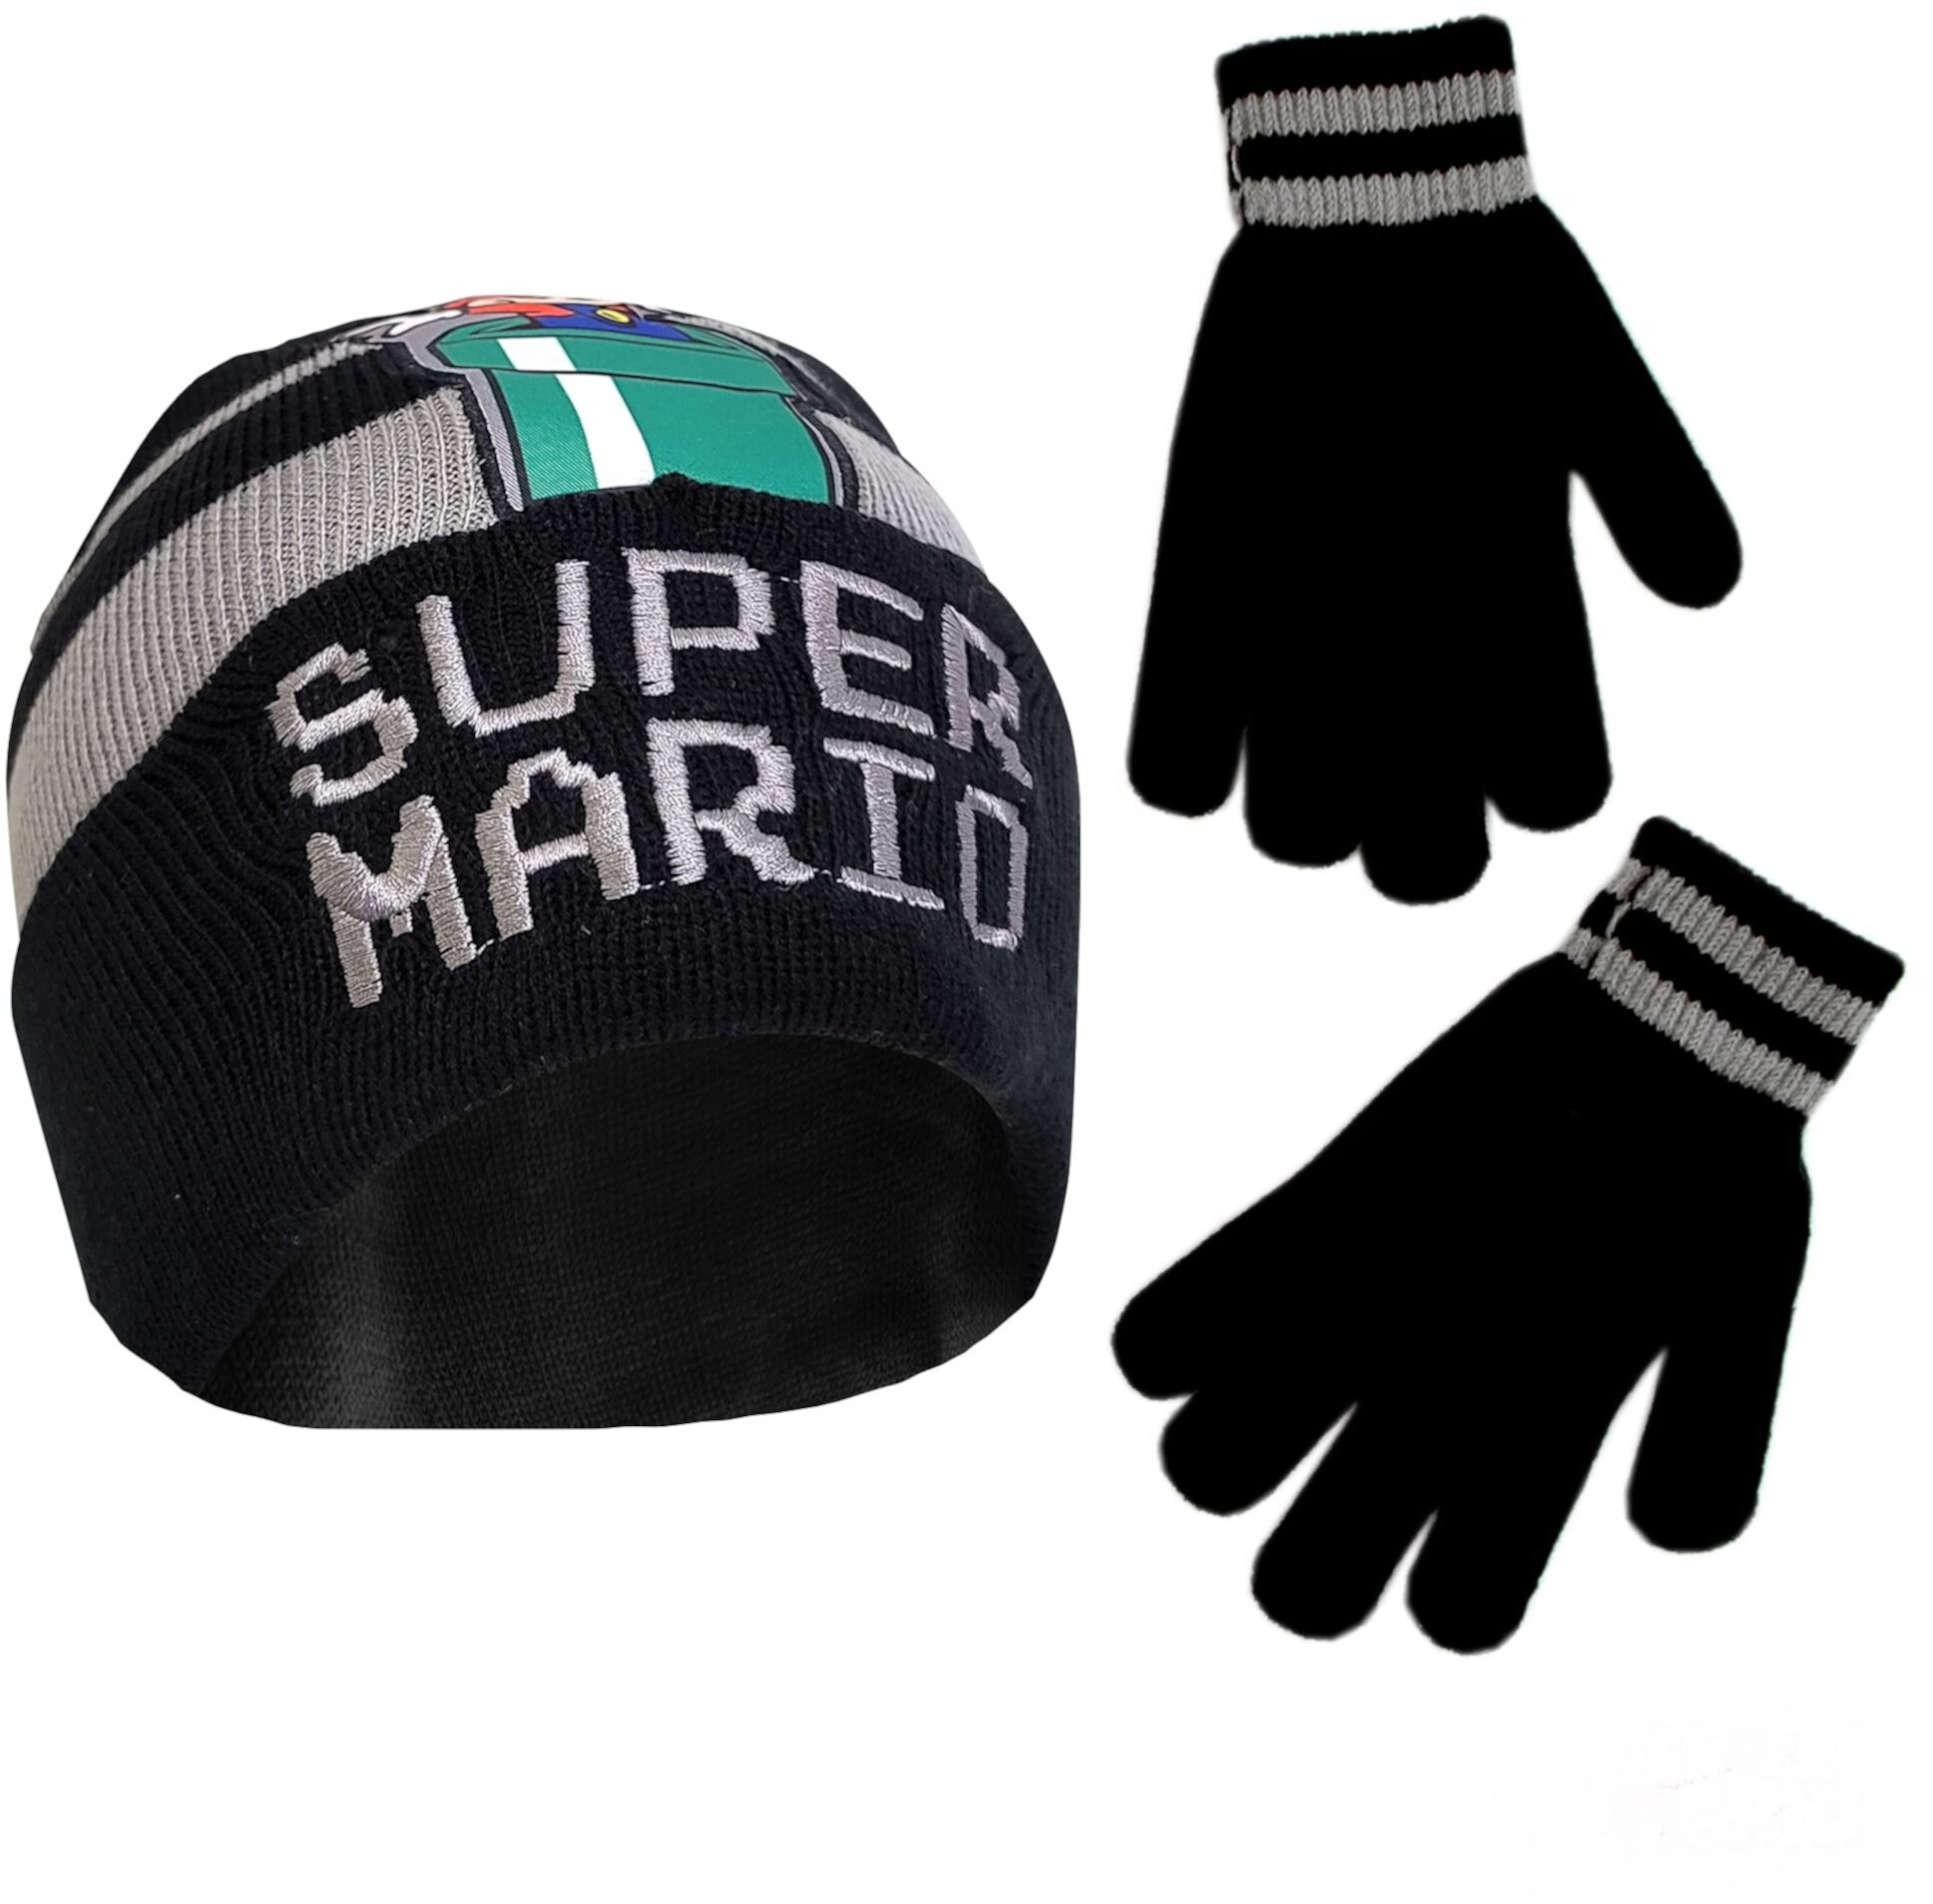 Зимняя шапка Nintendo для малышей, детские перчатки или варежки для малышей, шапочка Super Mario для мальчиков 4–7 лет Nintendo